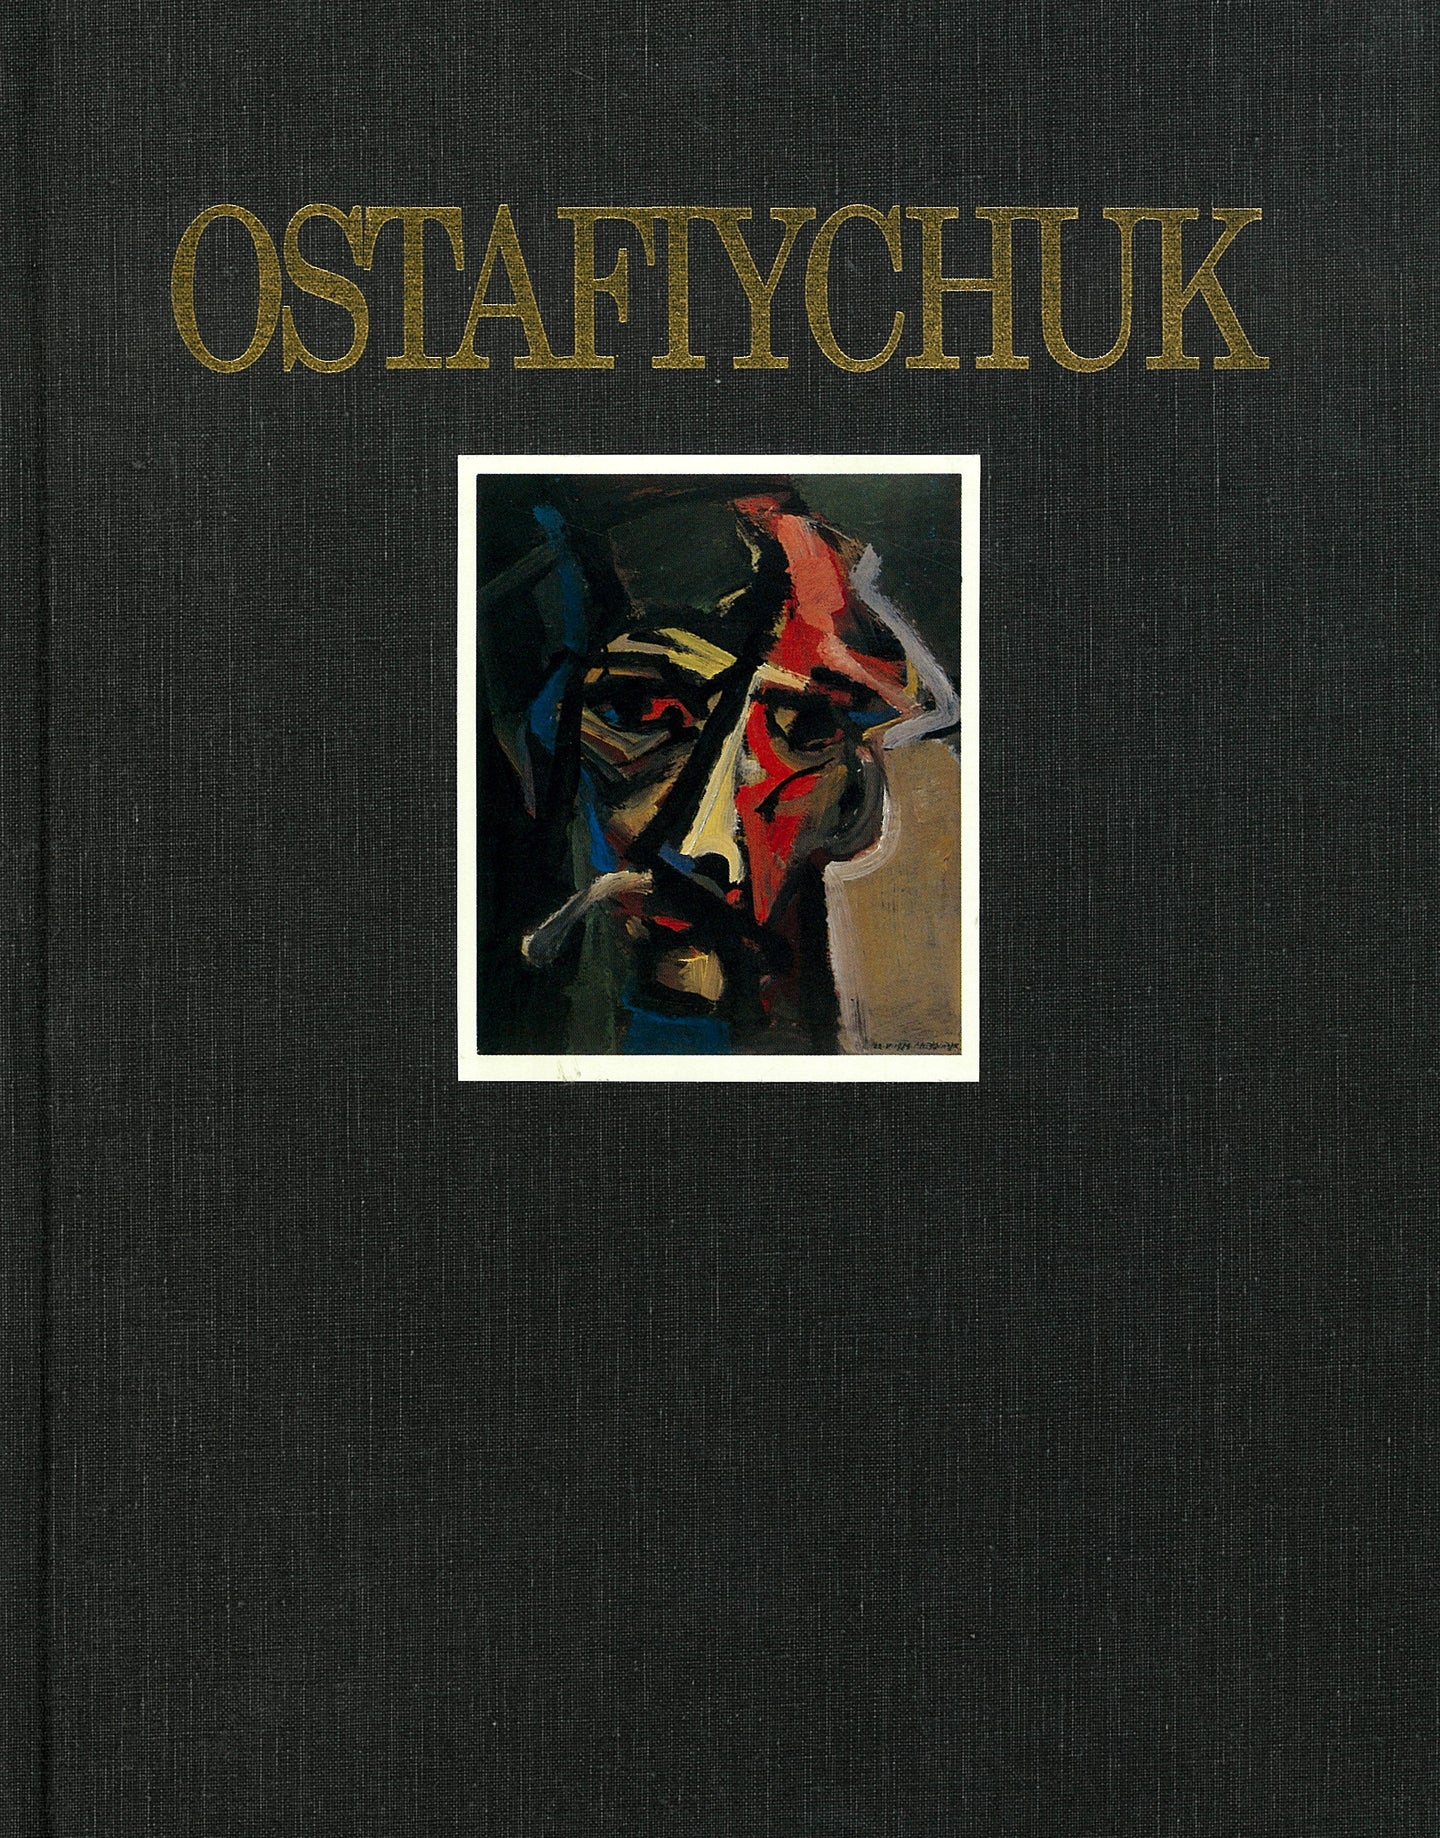 Ostafiychuk